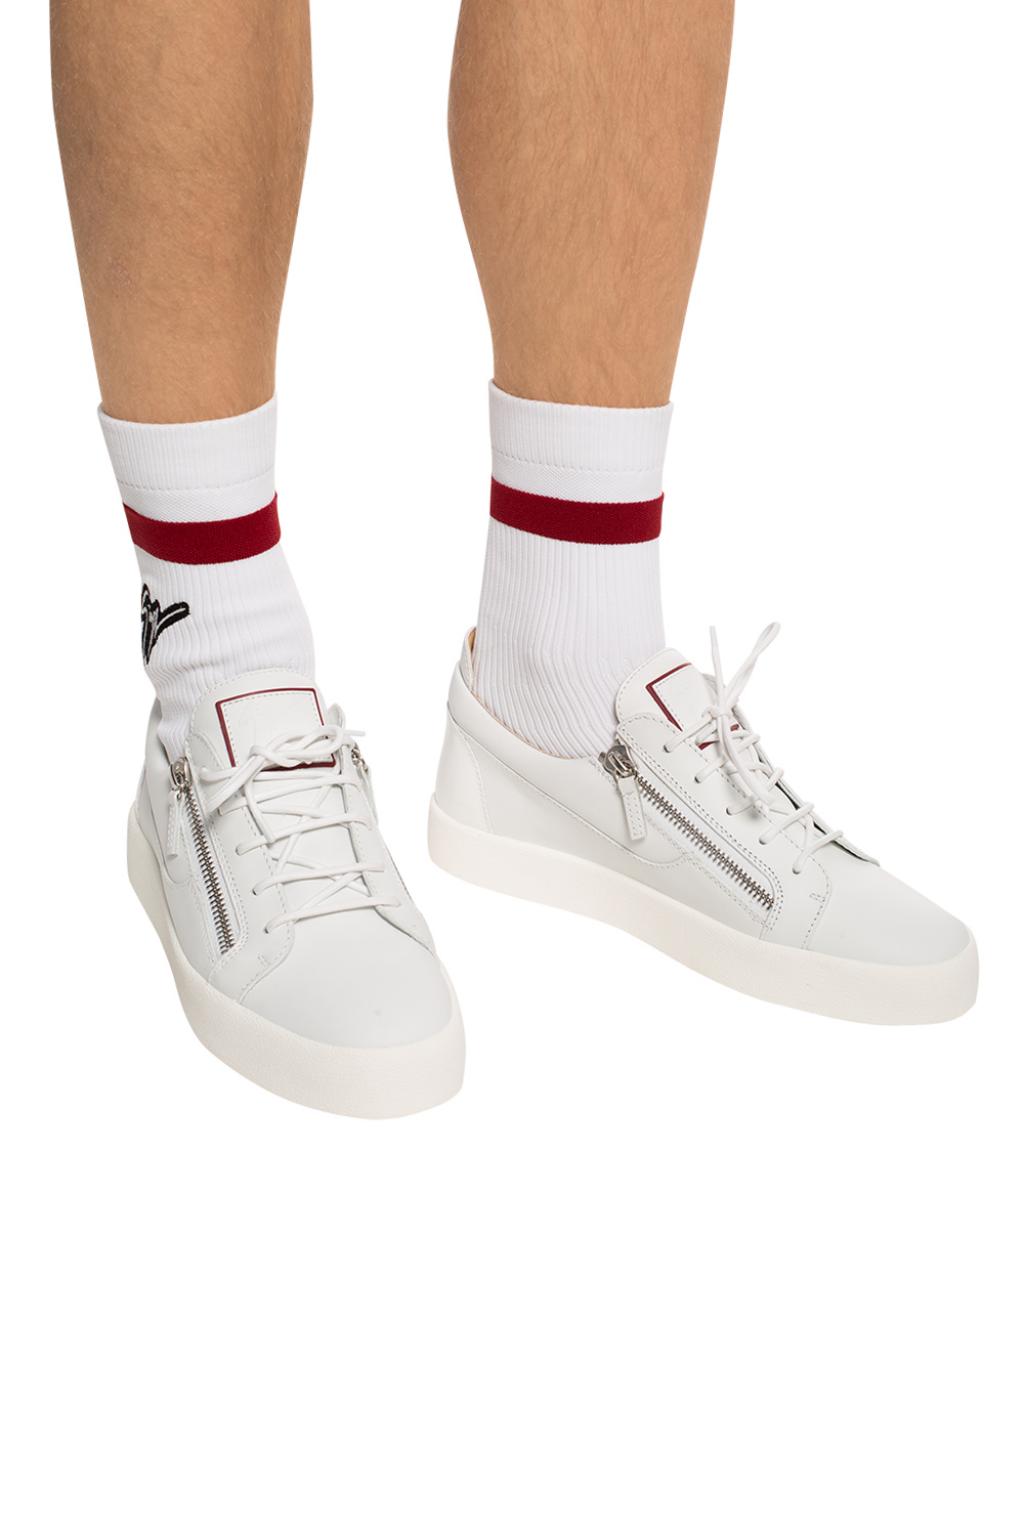 giuseppe zanotti sock sneakers